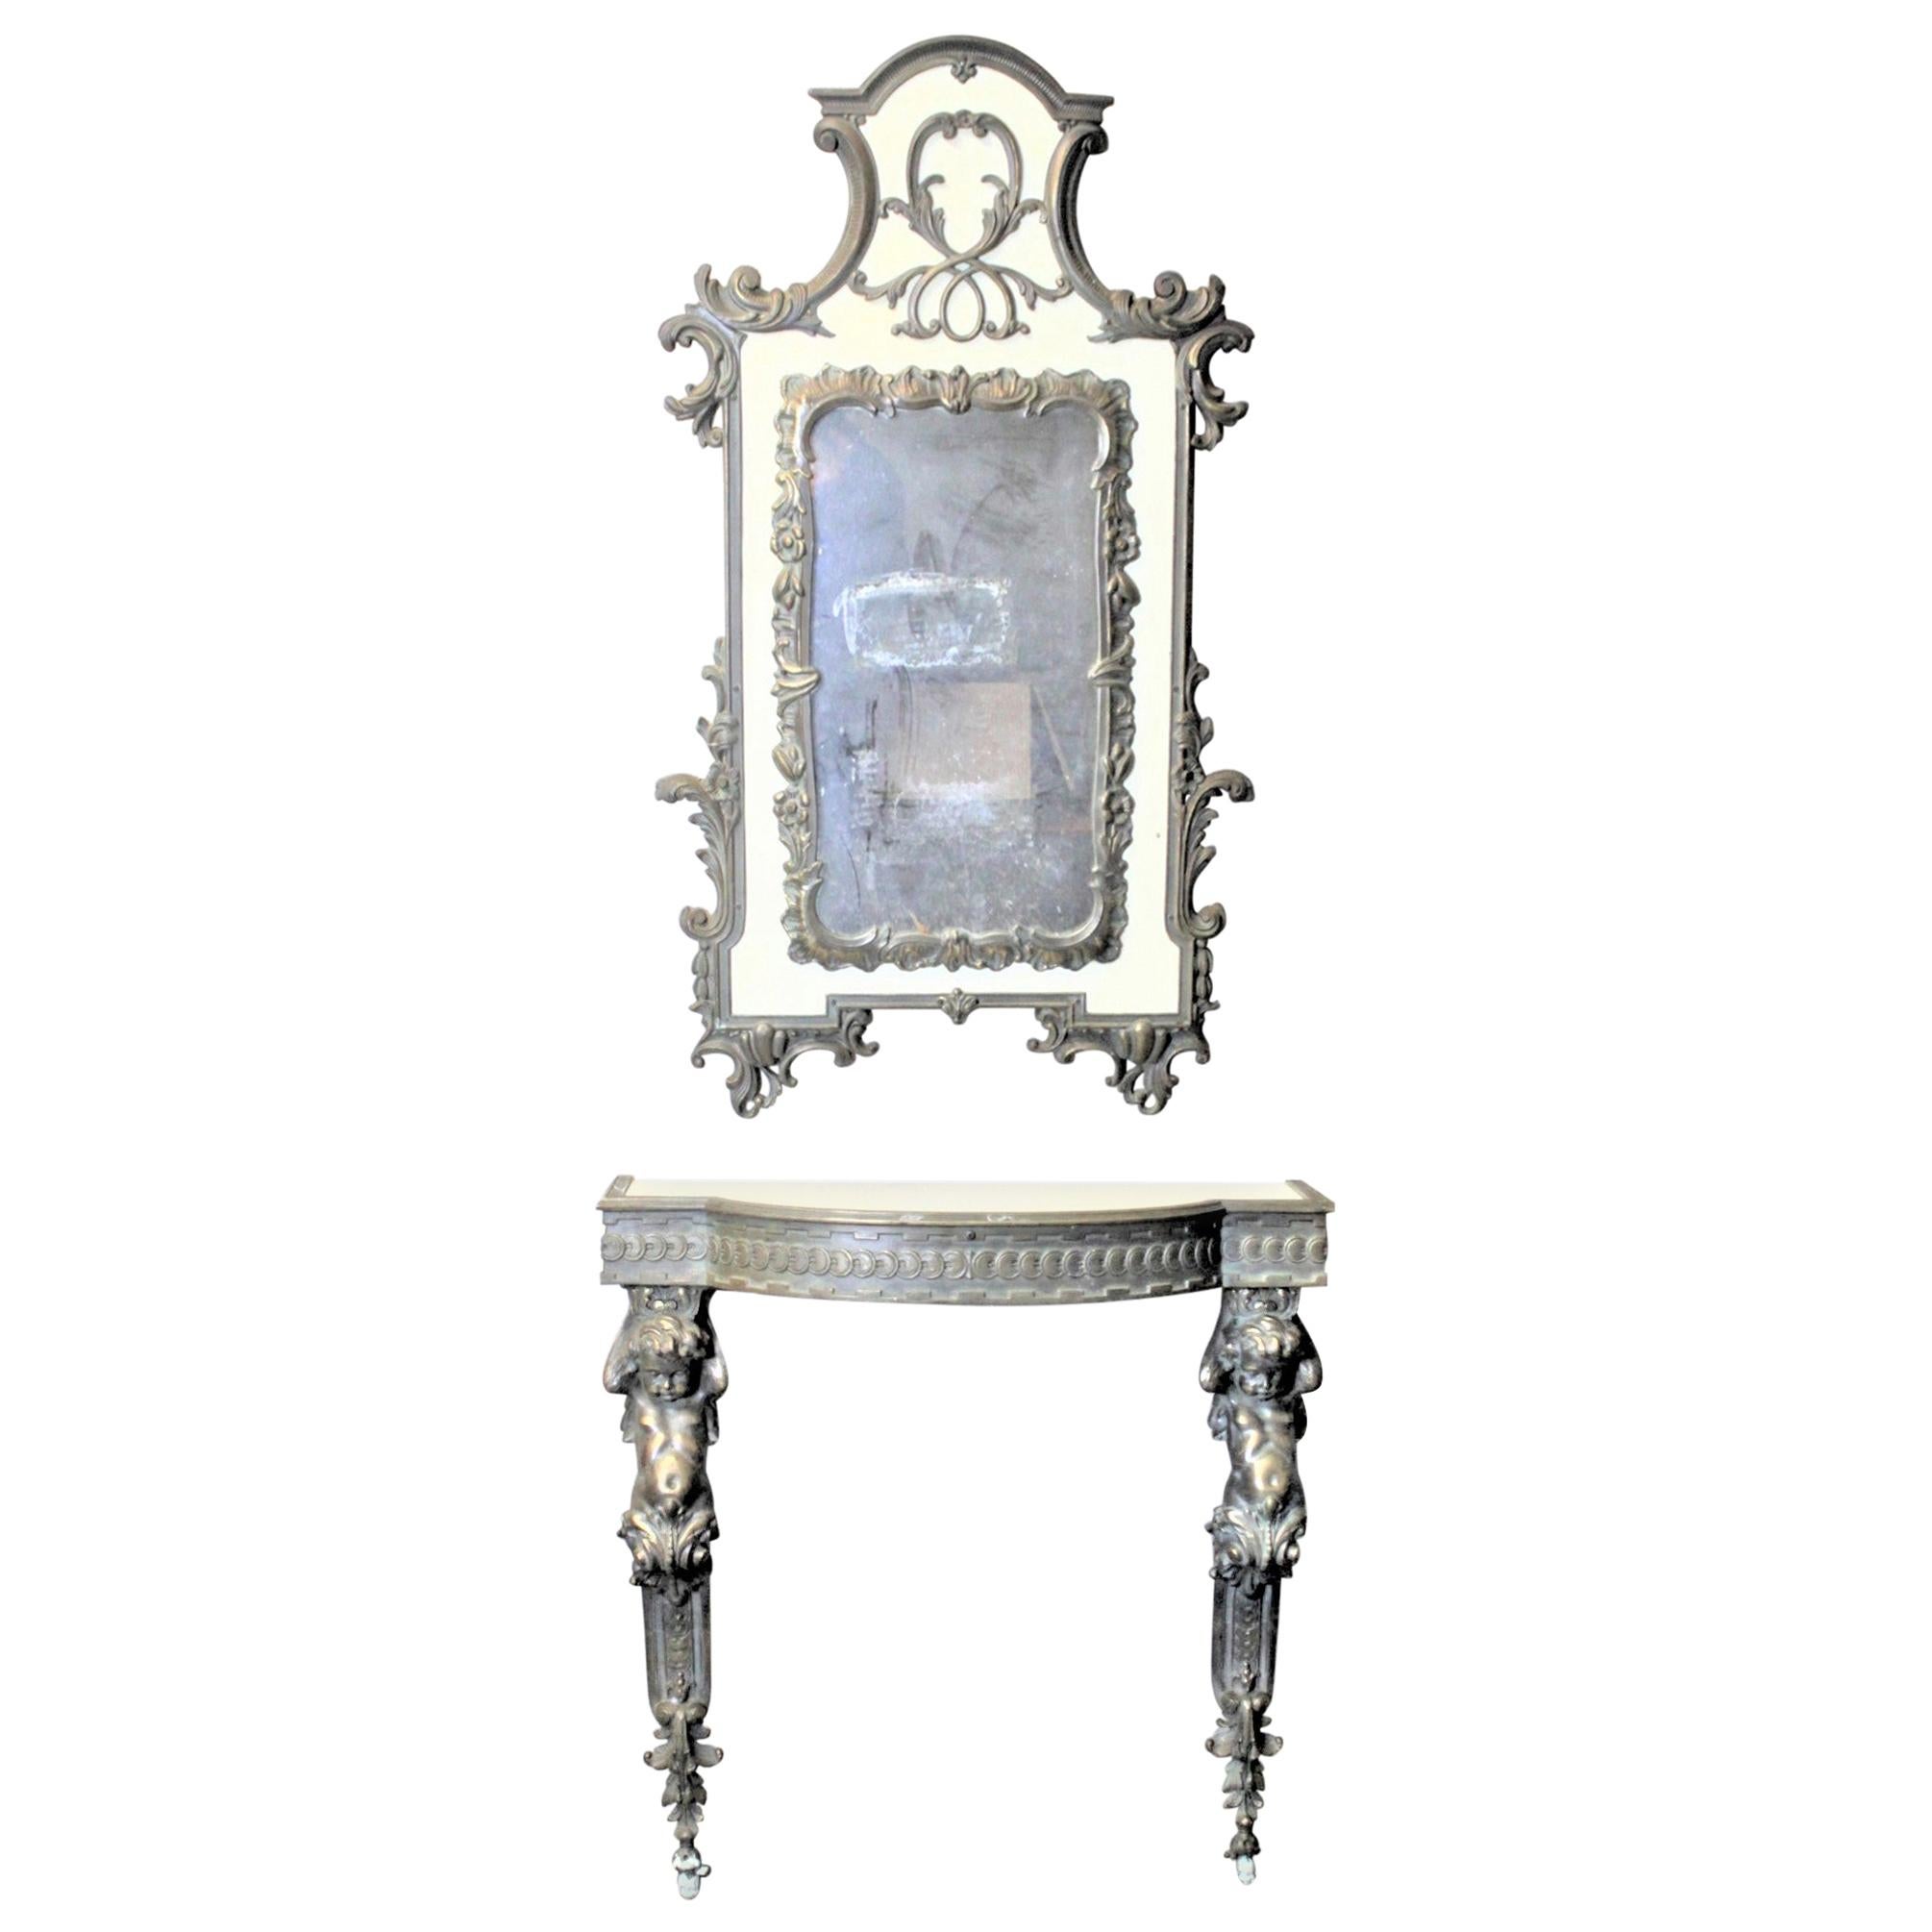 Konsolentisch und Spiegel im französischen Renaissance-Revival-Stil mit Cherub-Beinen aus Messing